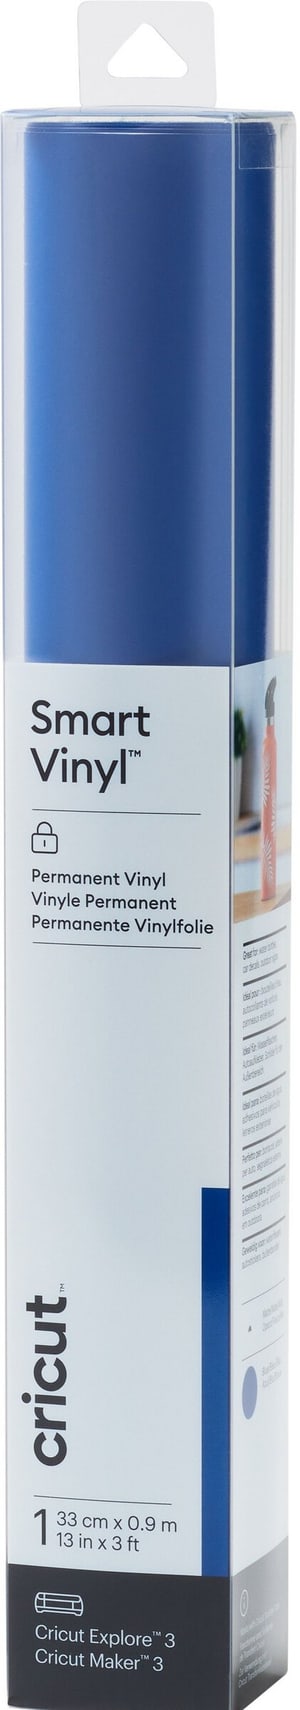 Film de vinyle Smart Matt Permanent 33 x 91 cm, Bleu